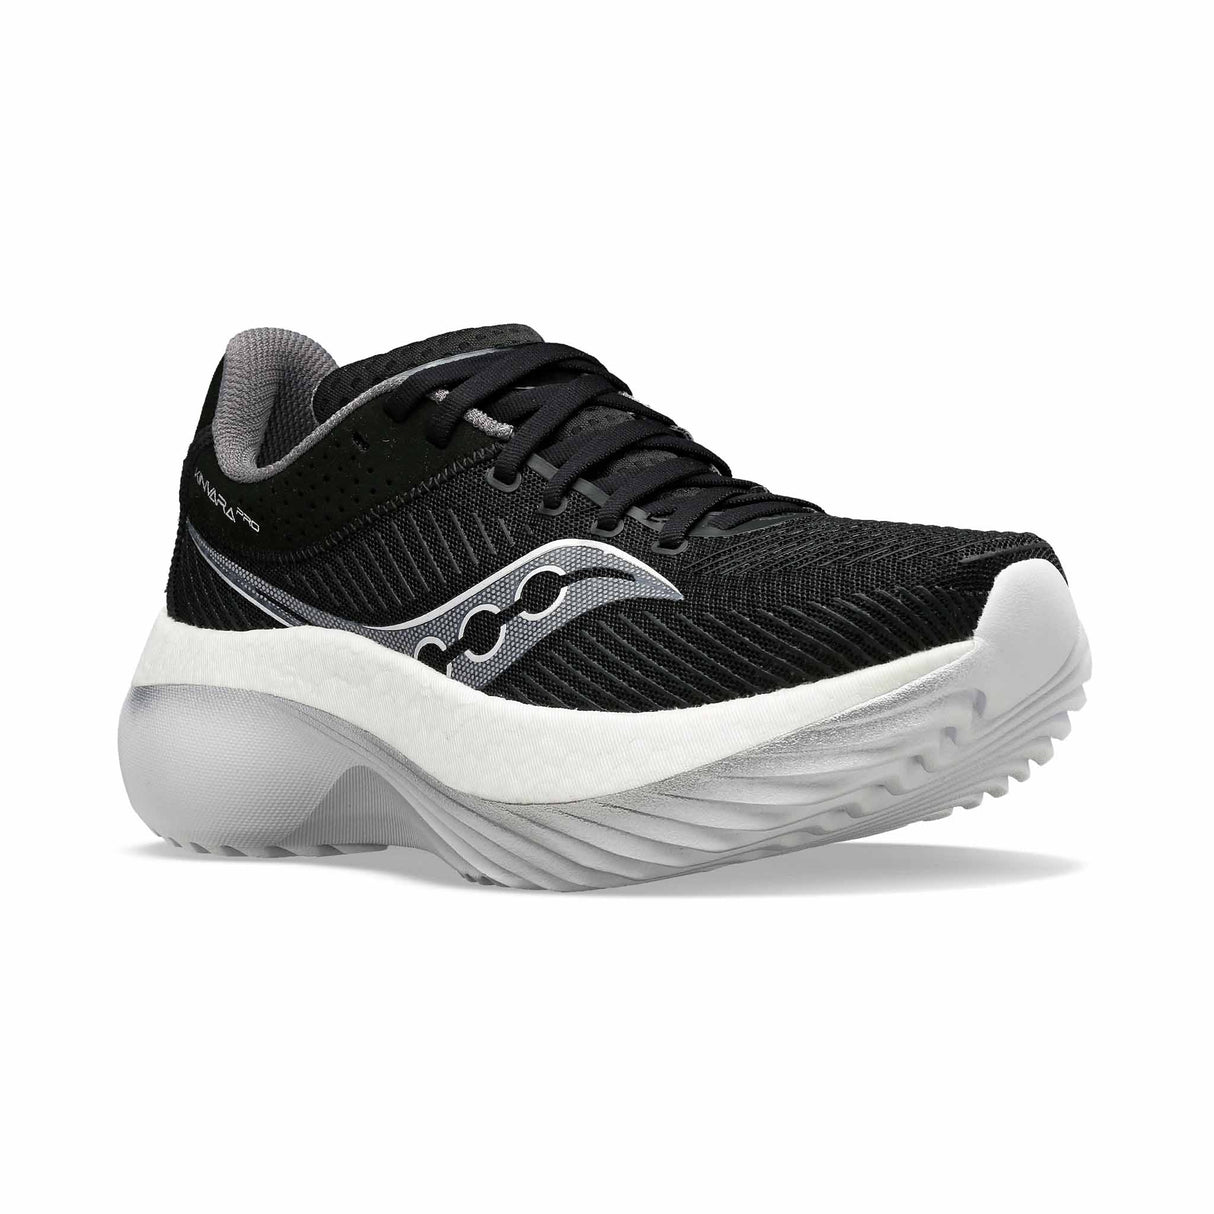 Saucony Kinvara Pro chaussures de course à pied homme - Noir / Blanc